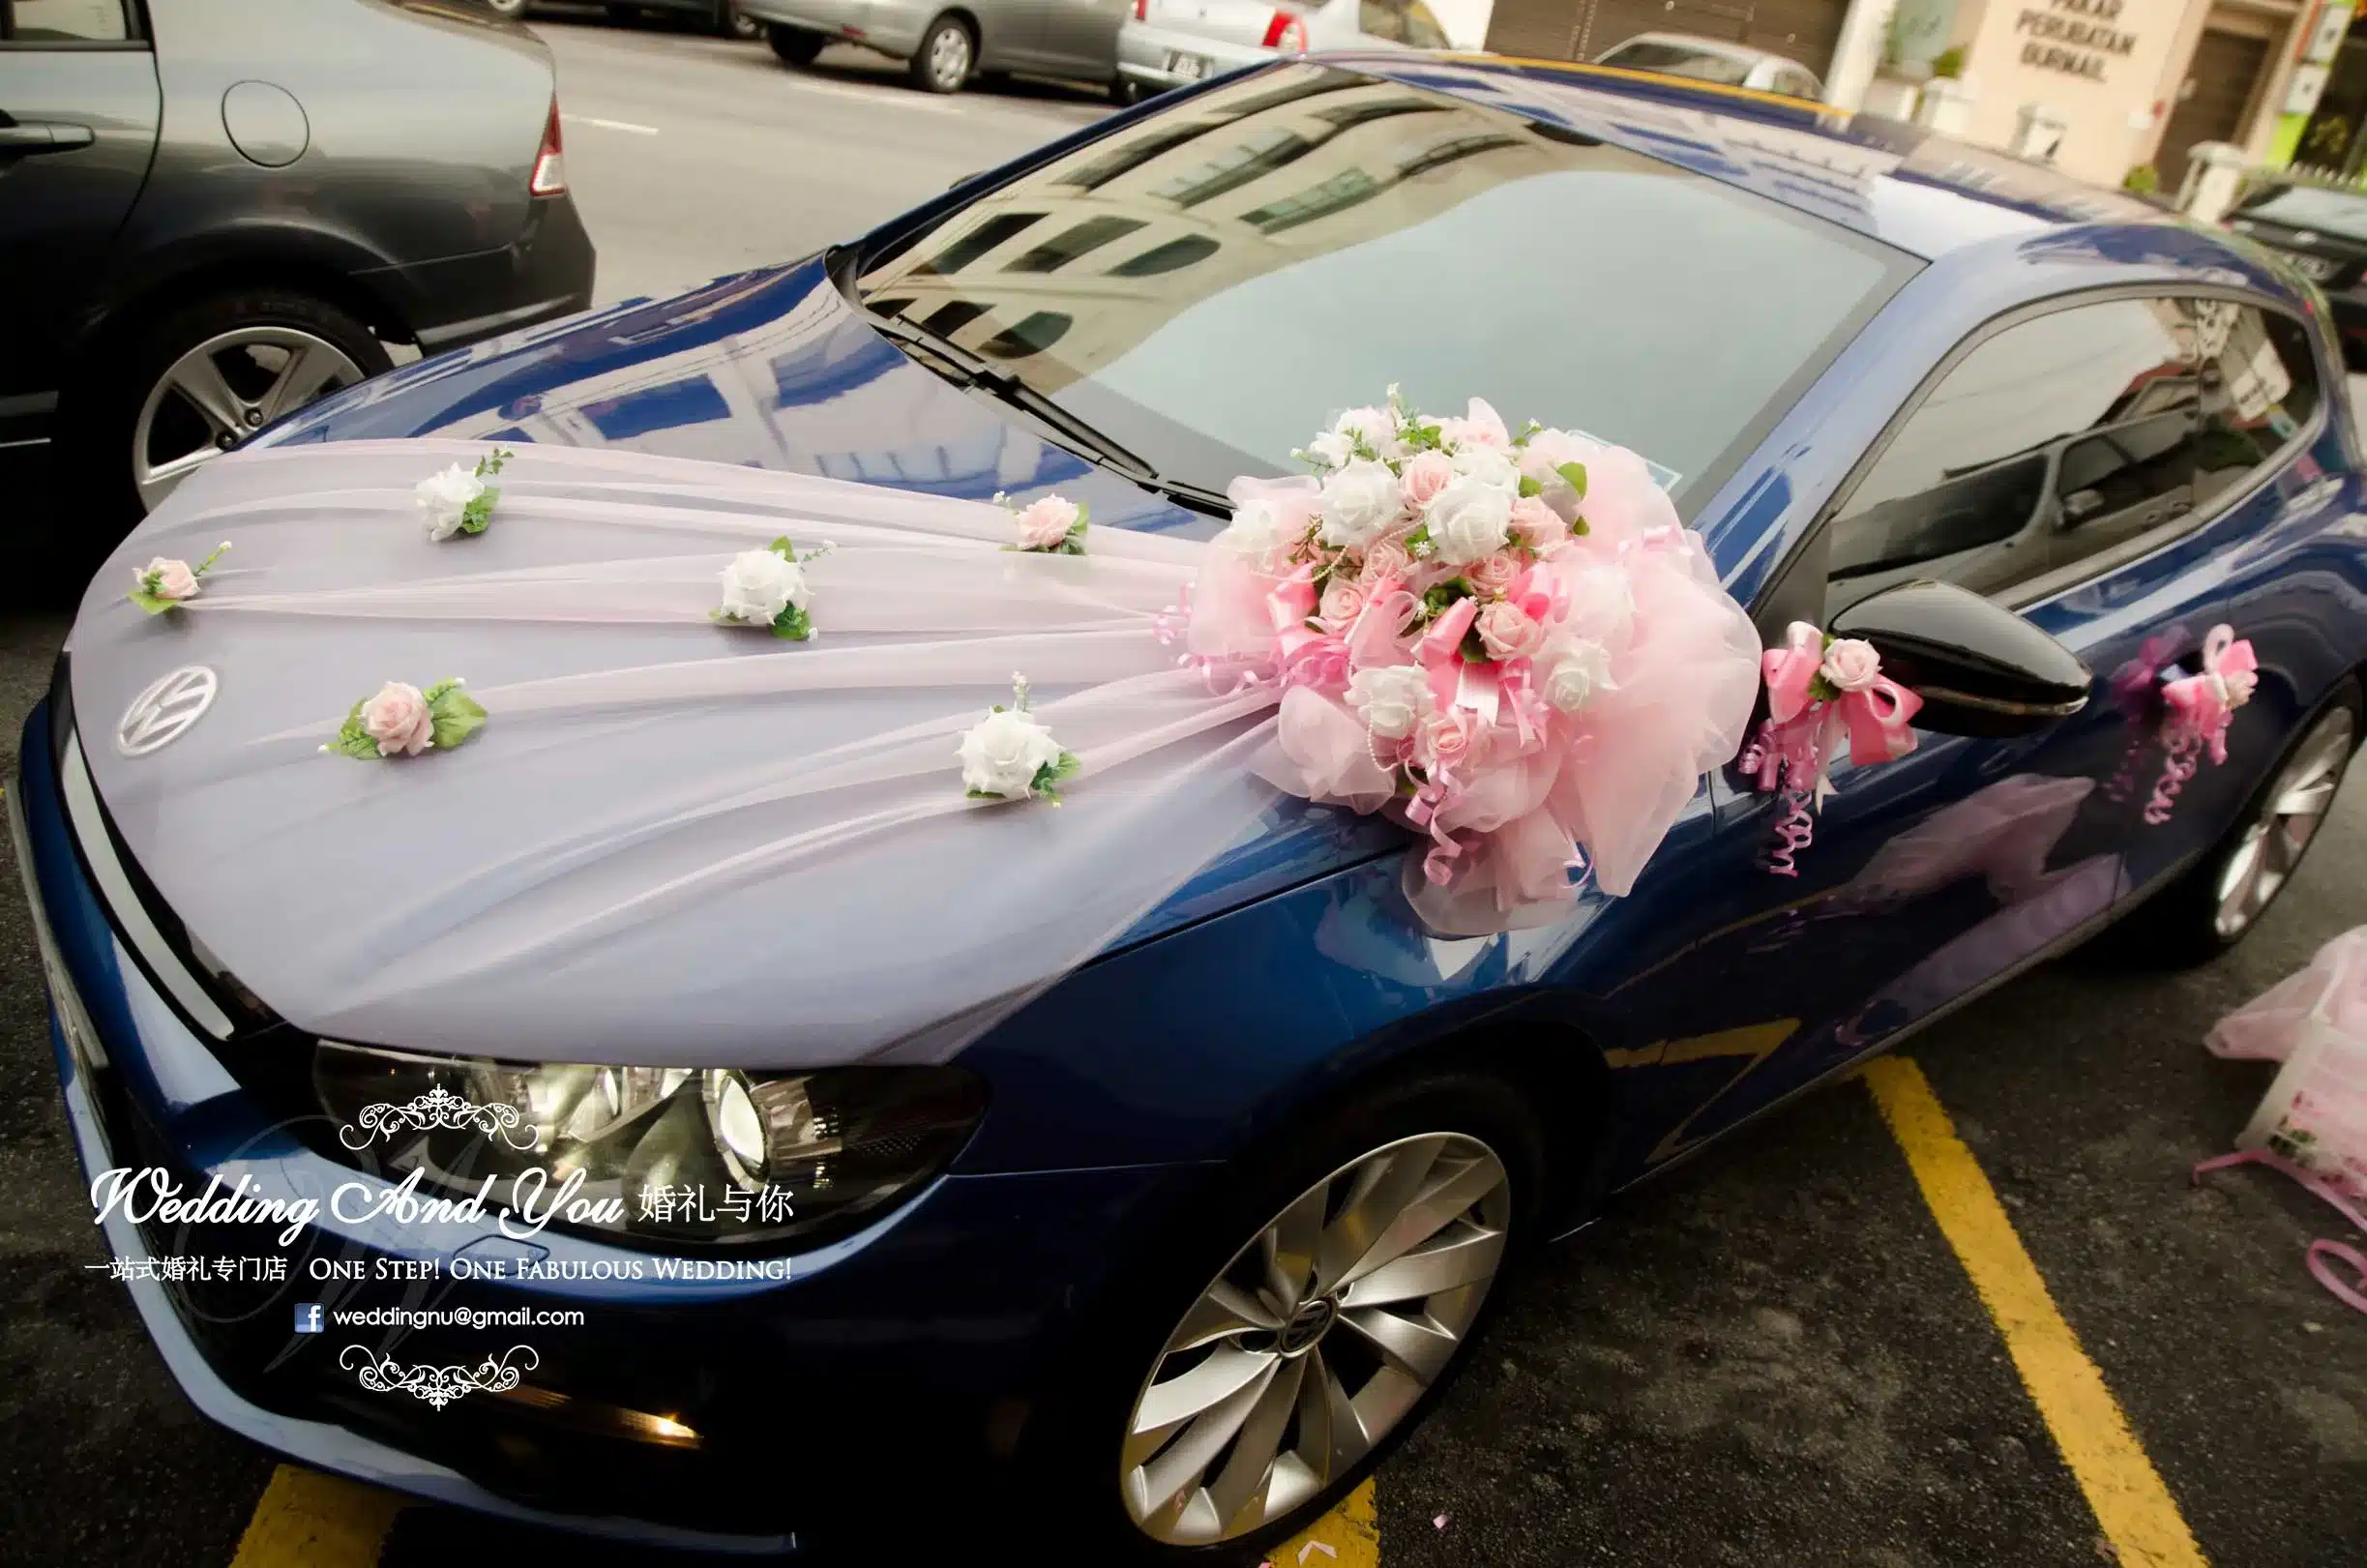 قیمت گل آرایی ماشین عروس